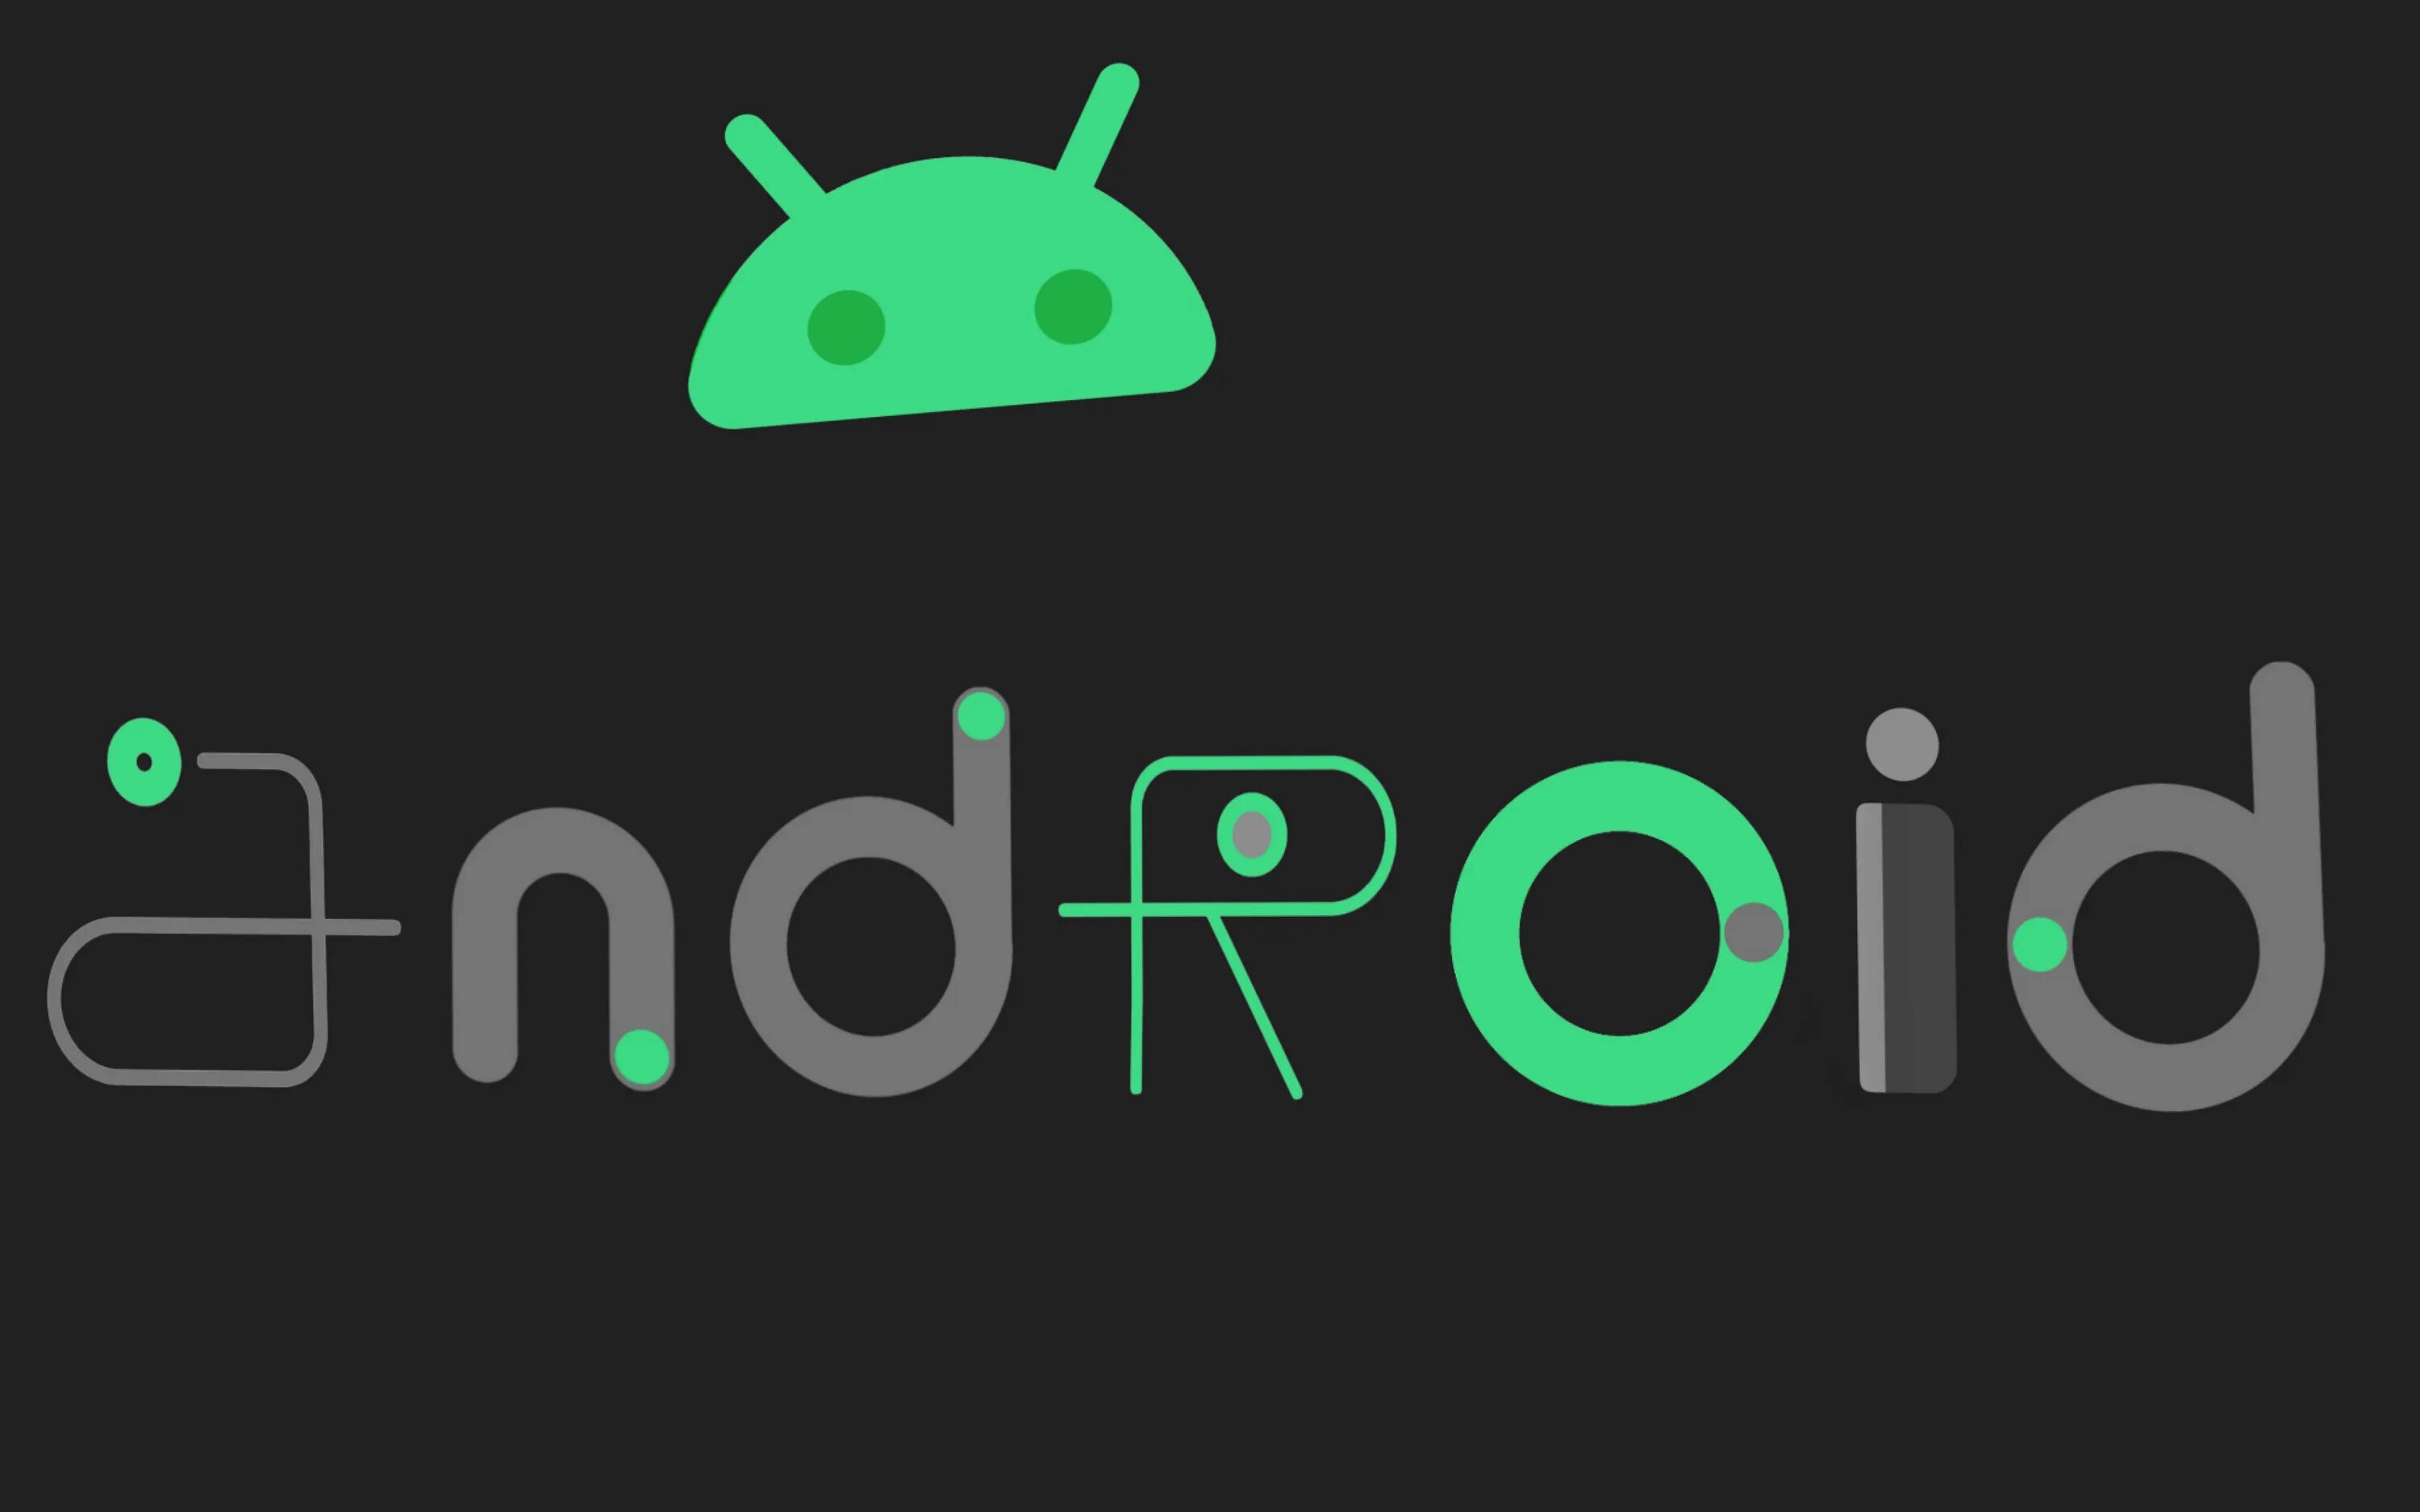 Логотип андроид. Андроид надпись. Обои на андроид с надписями. Обои с надписью Android.